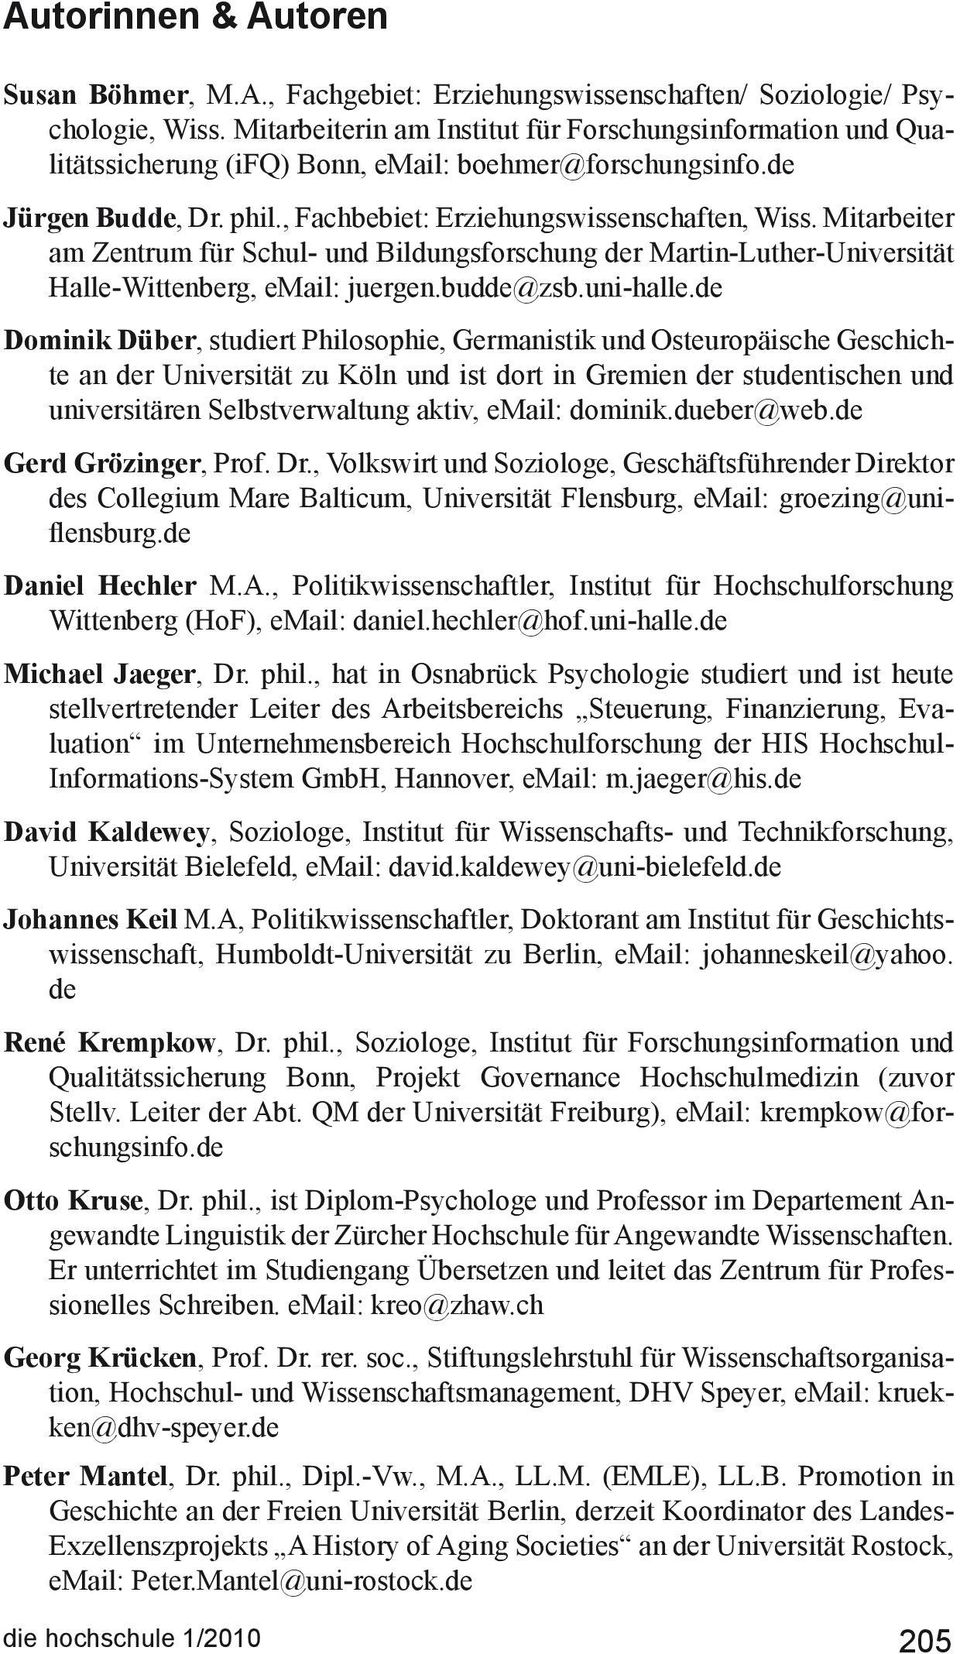 Mitarbeiter am Zentrum für Schul- und Bildungsforschung der Martin-Luther-Universität Halle-Wittenberg, email: juergen.budde@zsb.uni-halle.